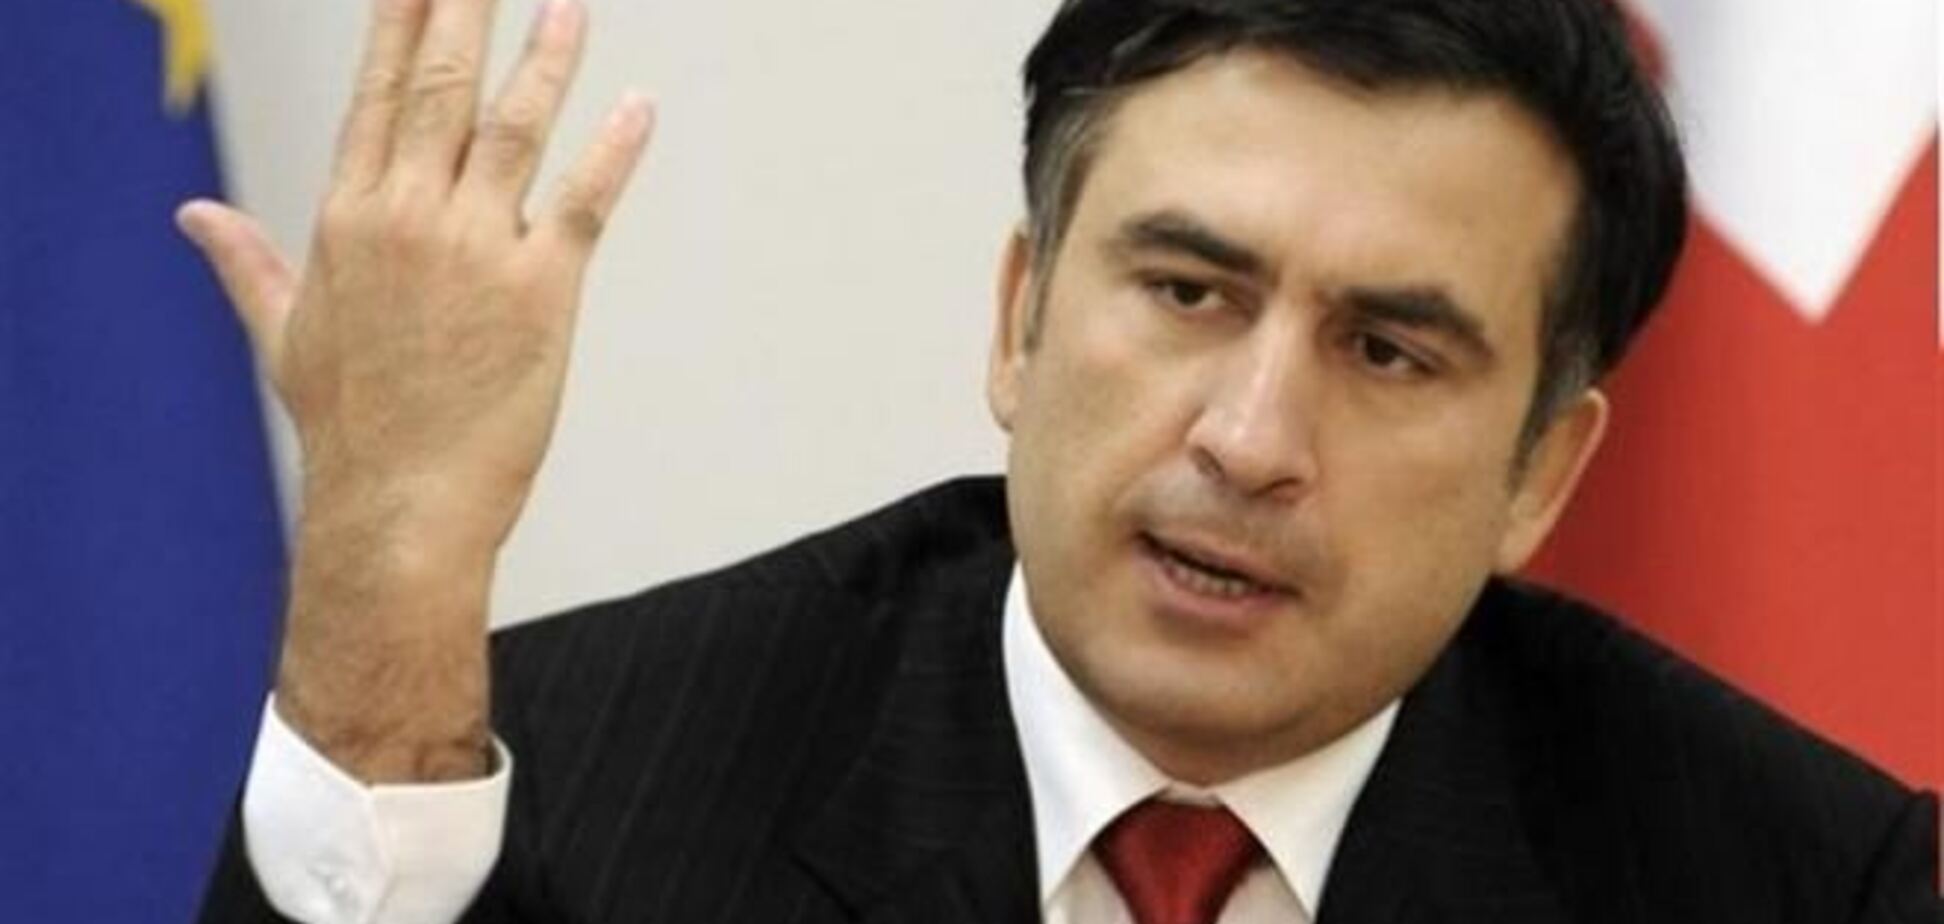  В МИД Грузии не знают об объявлении Саакашвили персоной нон-грата в Украине